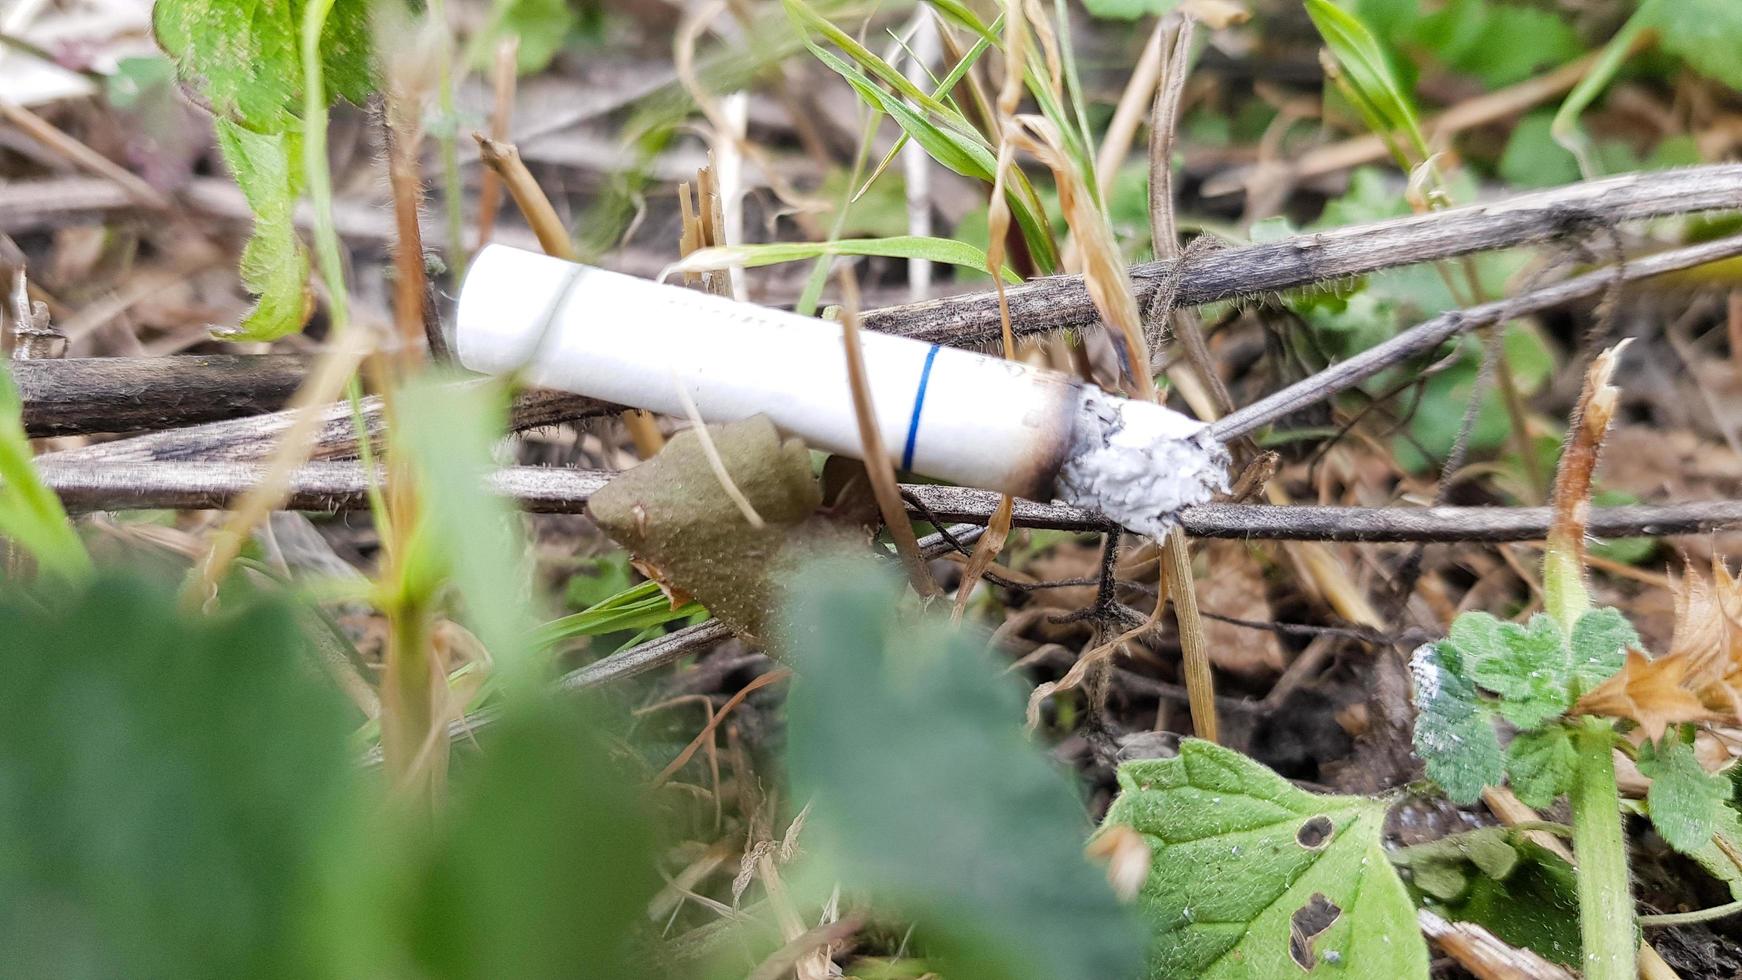 cigarett av misstag kastas i torrt gräs. cigarettfimp slängd på en grön äng, förorenar naturen och miljön foto